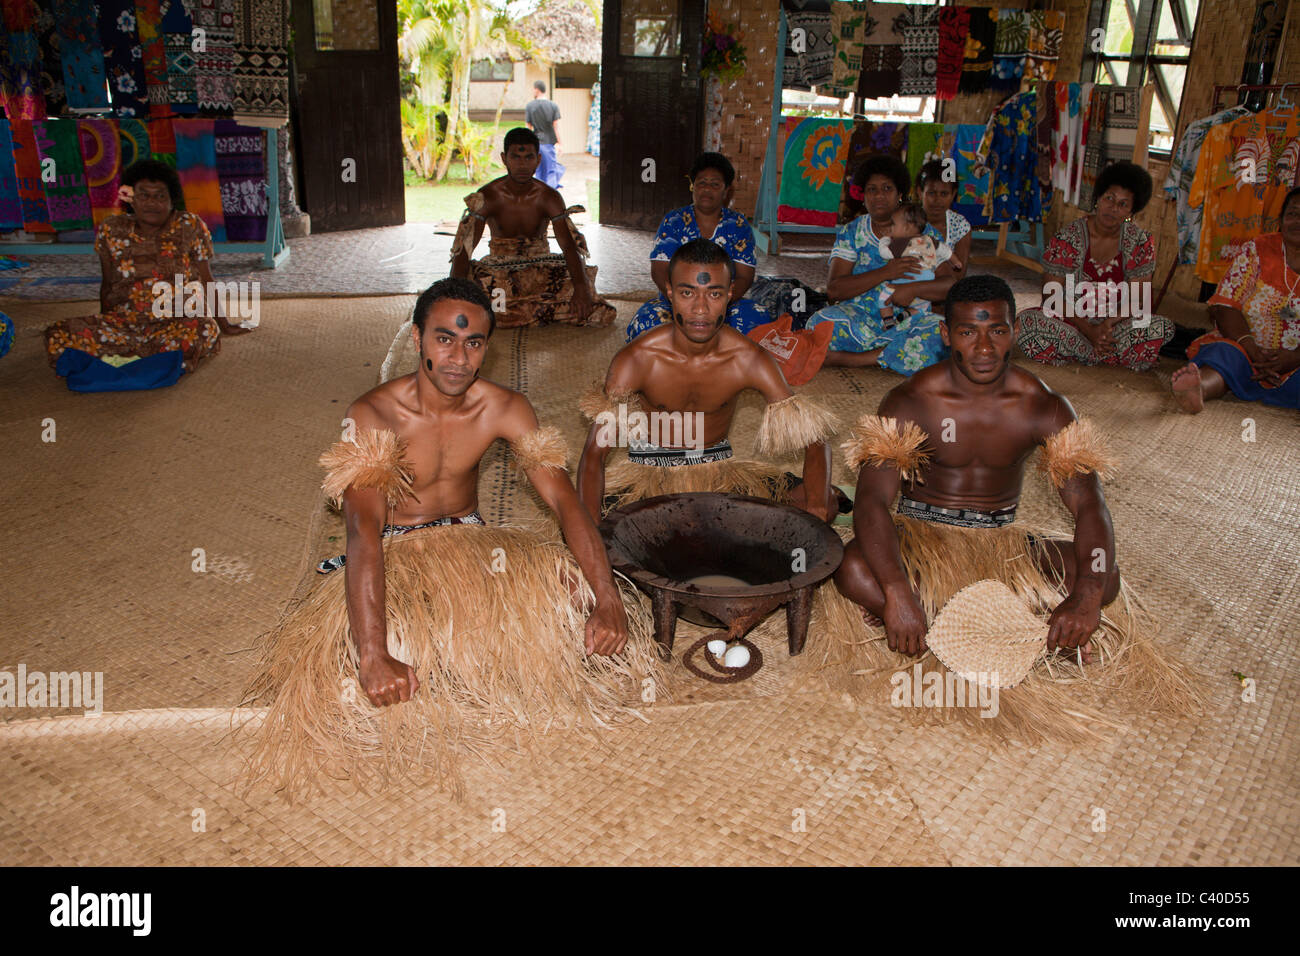 Autochtones effectuer cérémonie Kava, Pacific Harbour, Viti Levu, Fidji Banque D'Images